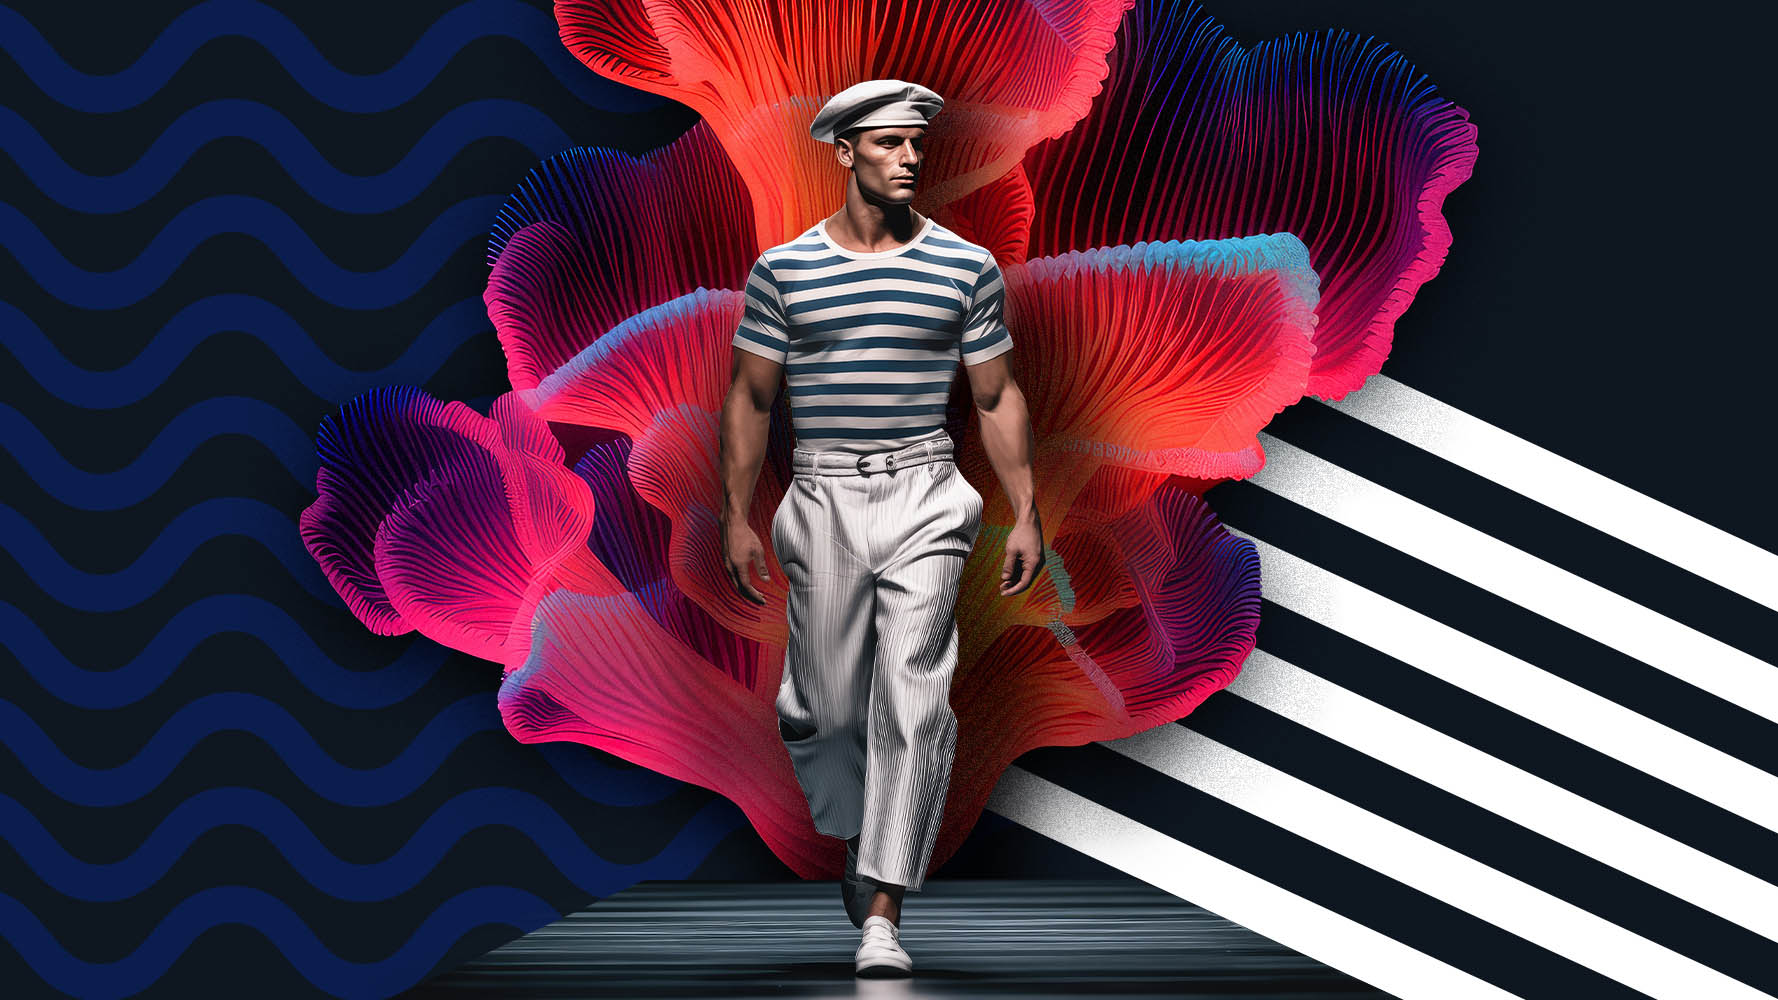 Vaaleisiin housuihin, sinivalkoraitaiseen paitaan ja merimiestyyliseen valkoiseen hattuun pukeutunut miesmalli kävelee eteenpäin. Taustalla on värikkäitä viiruullisia ja aaltomaisia kuvioita.